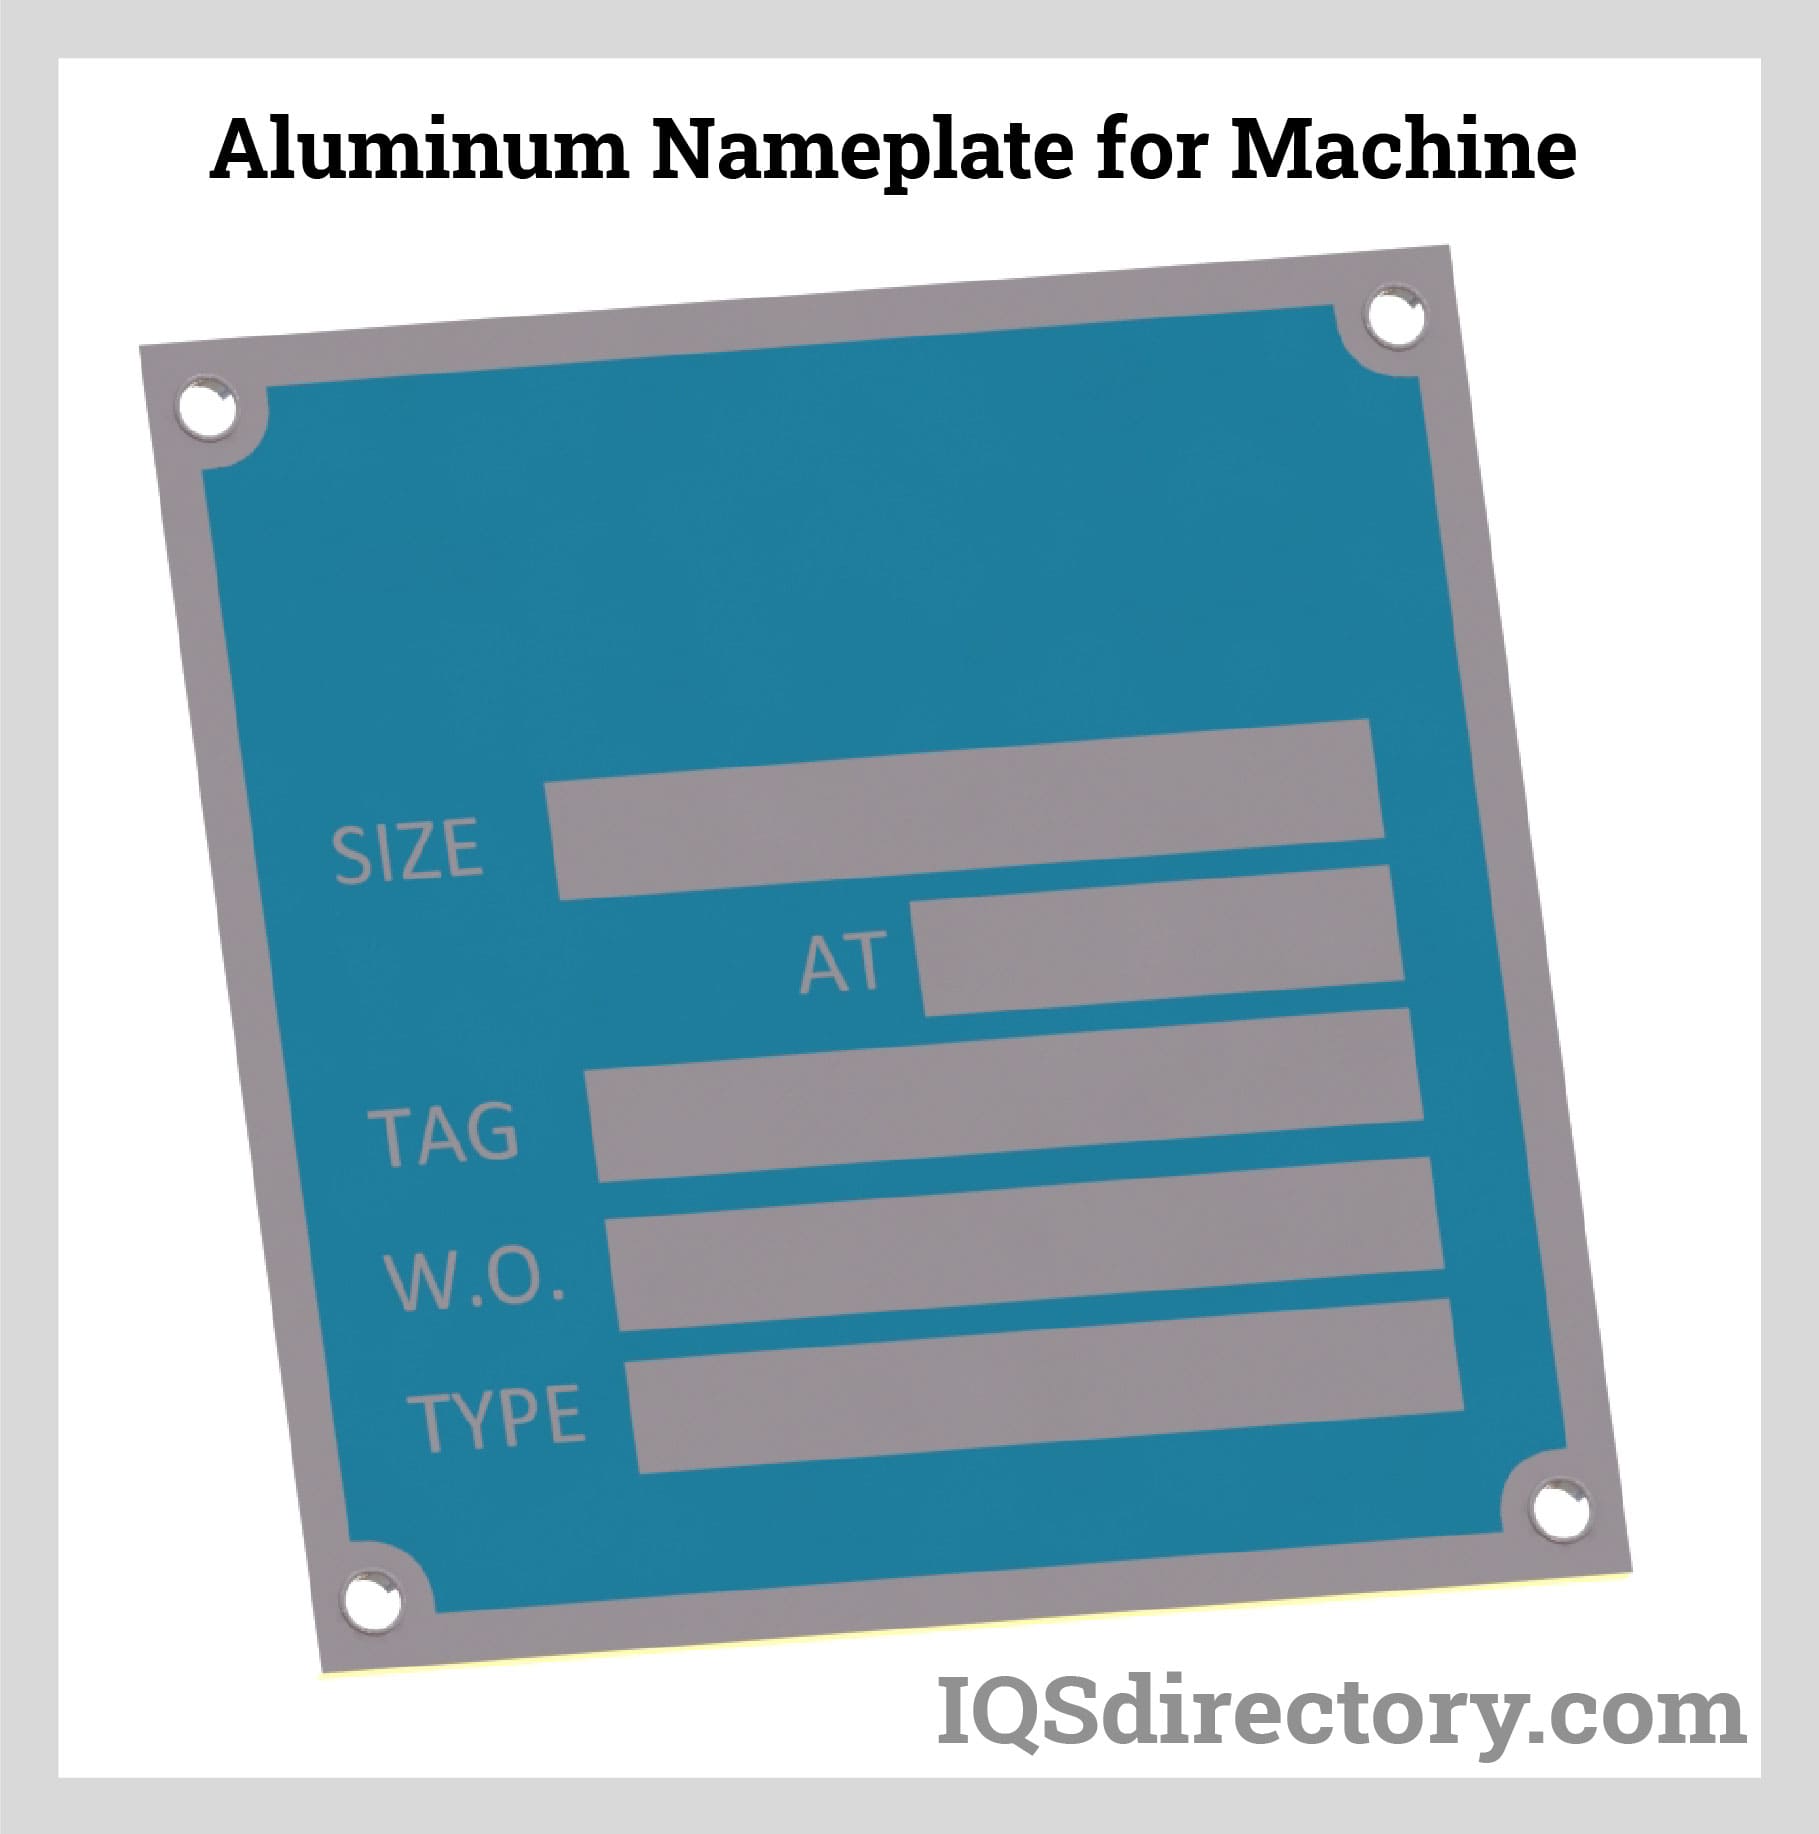 Aluminum Nameplate for Machine